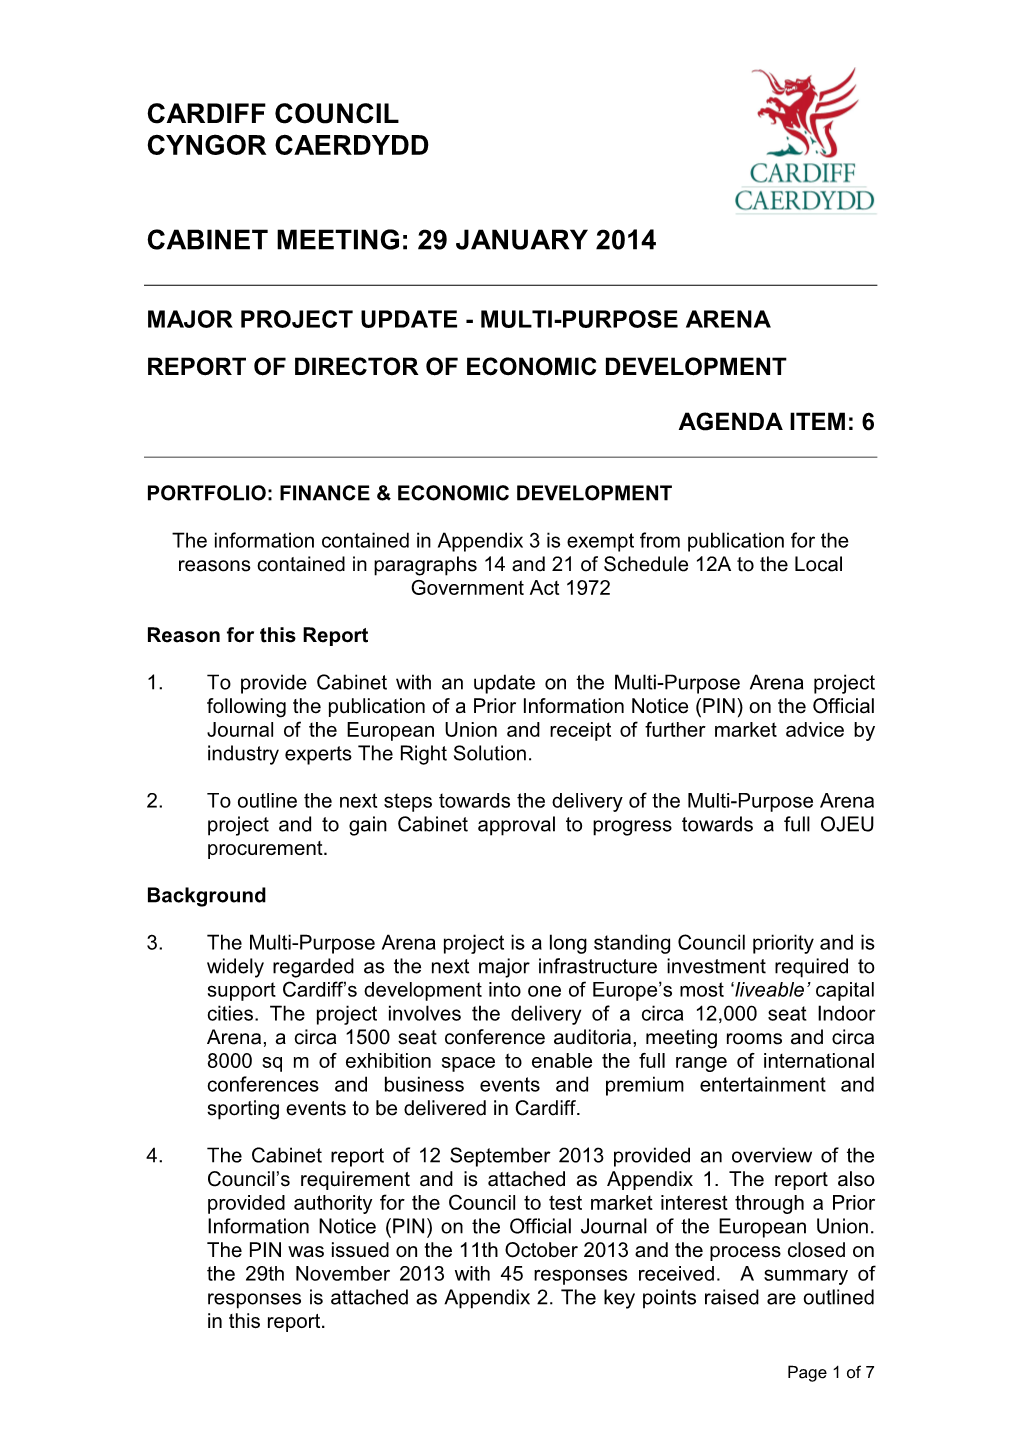 Cardiff Council Cyngor Caerdydd Cabinet Meeting: 29 January 2014